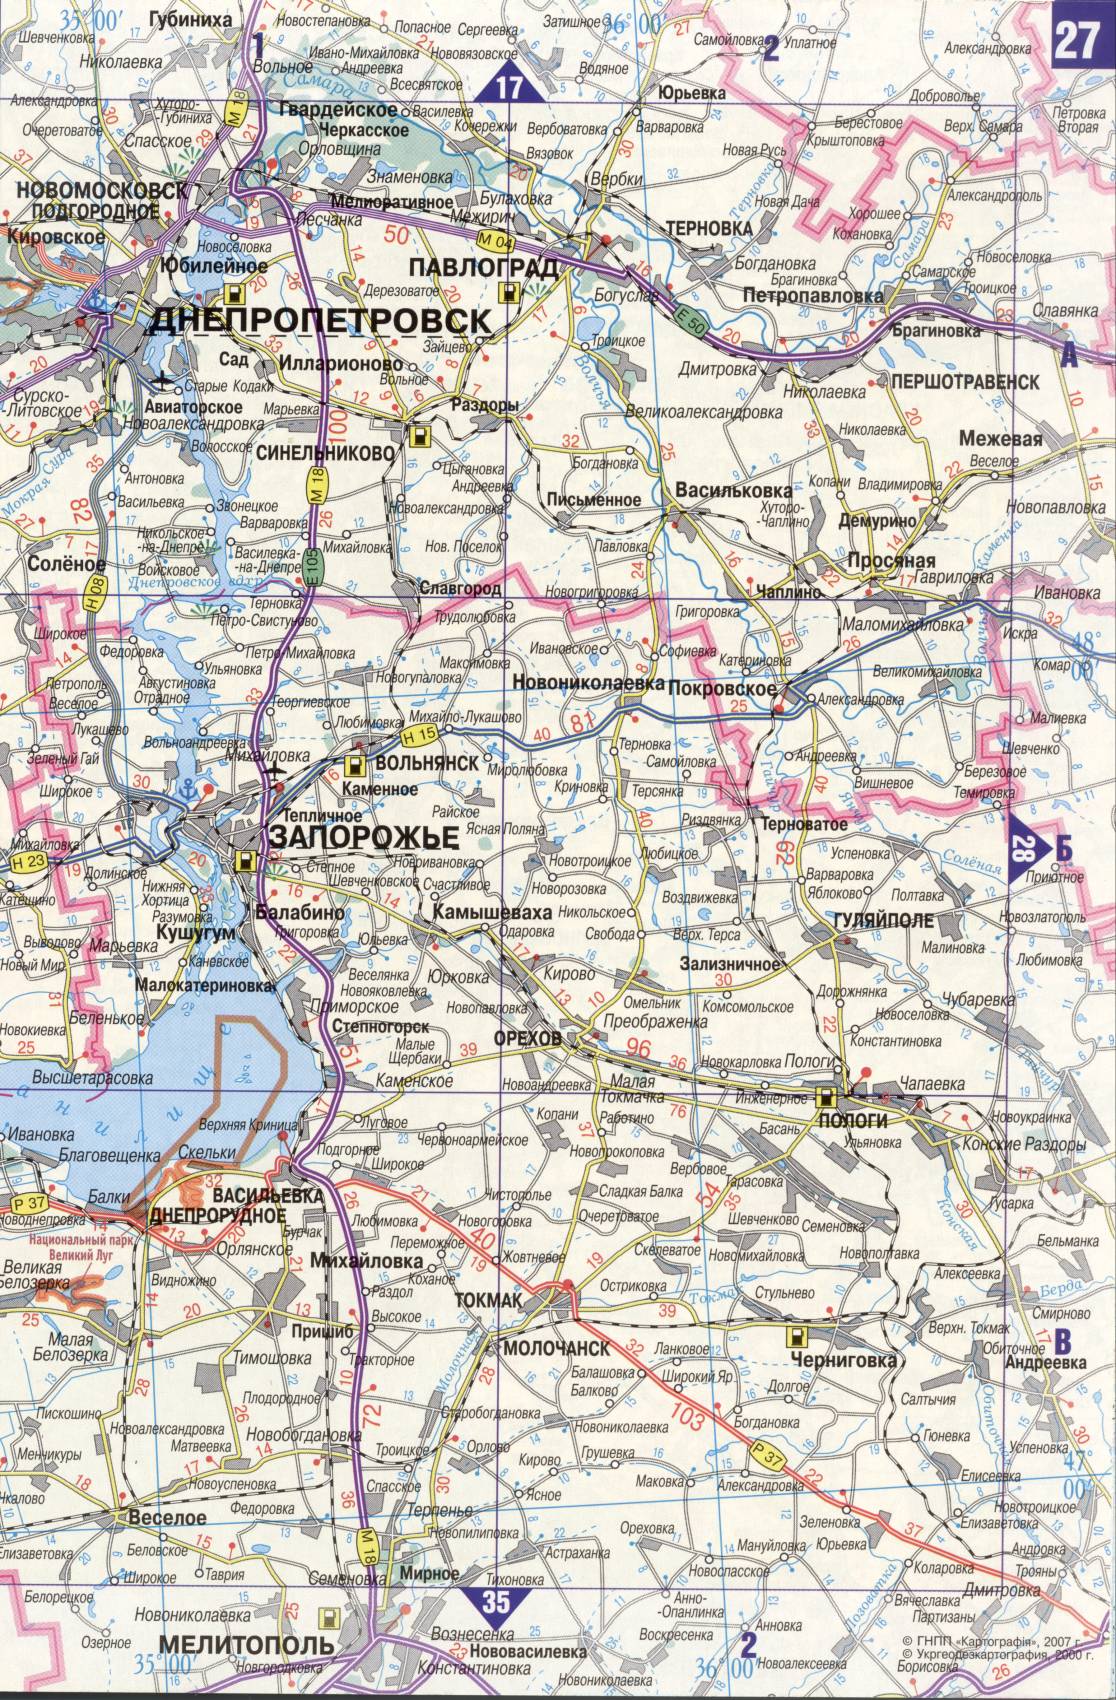 Karte der Ukraine. Detaillierte Straßenkarte der Ukraine avtomobilnog Satin. kostenlos herunterladen, H2